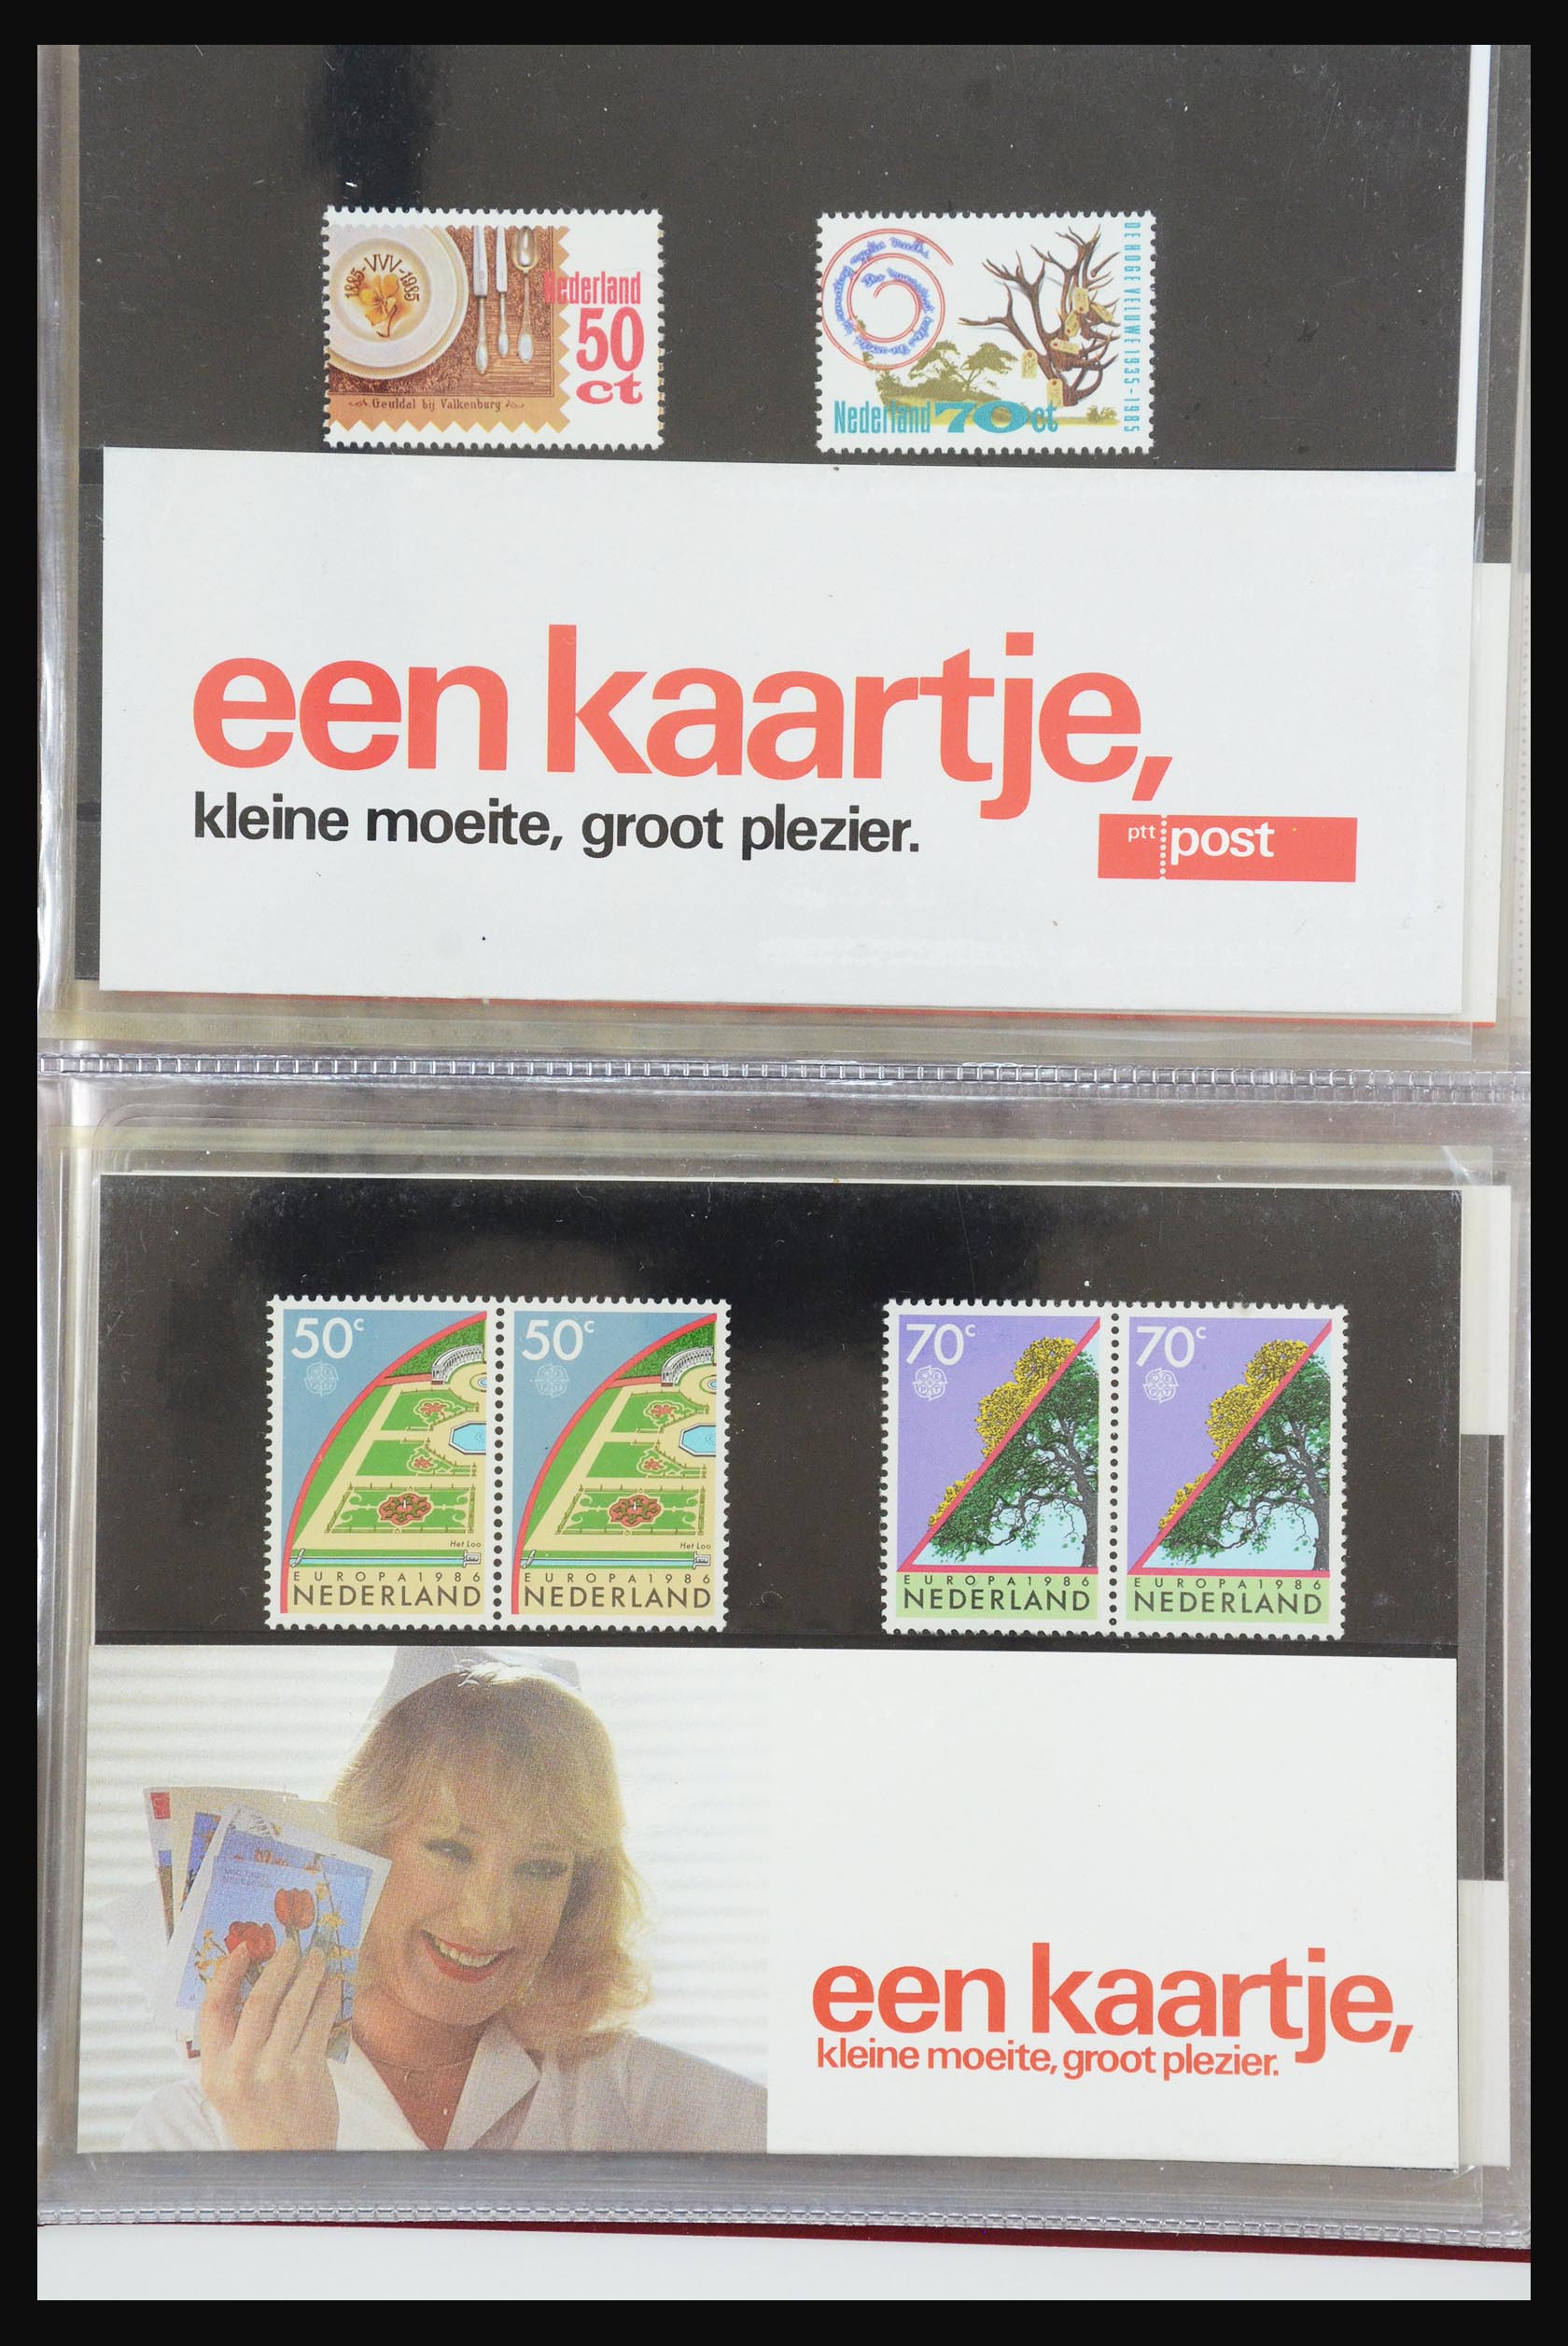 31495 043 - 31495 Netherlands special presentation packs.